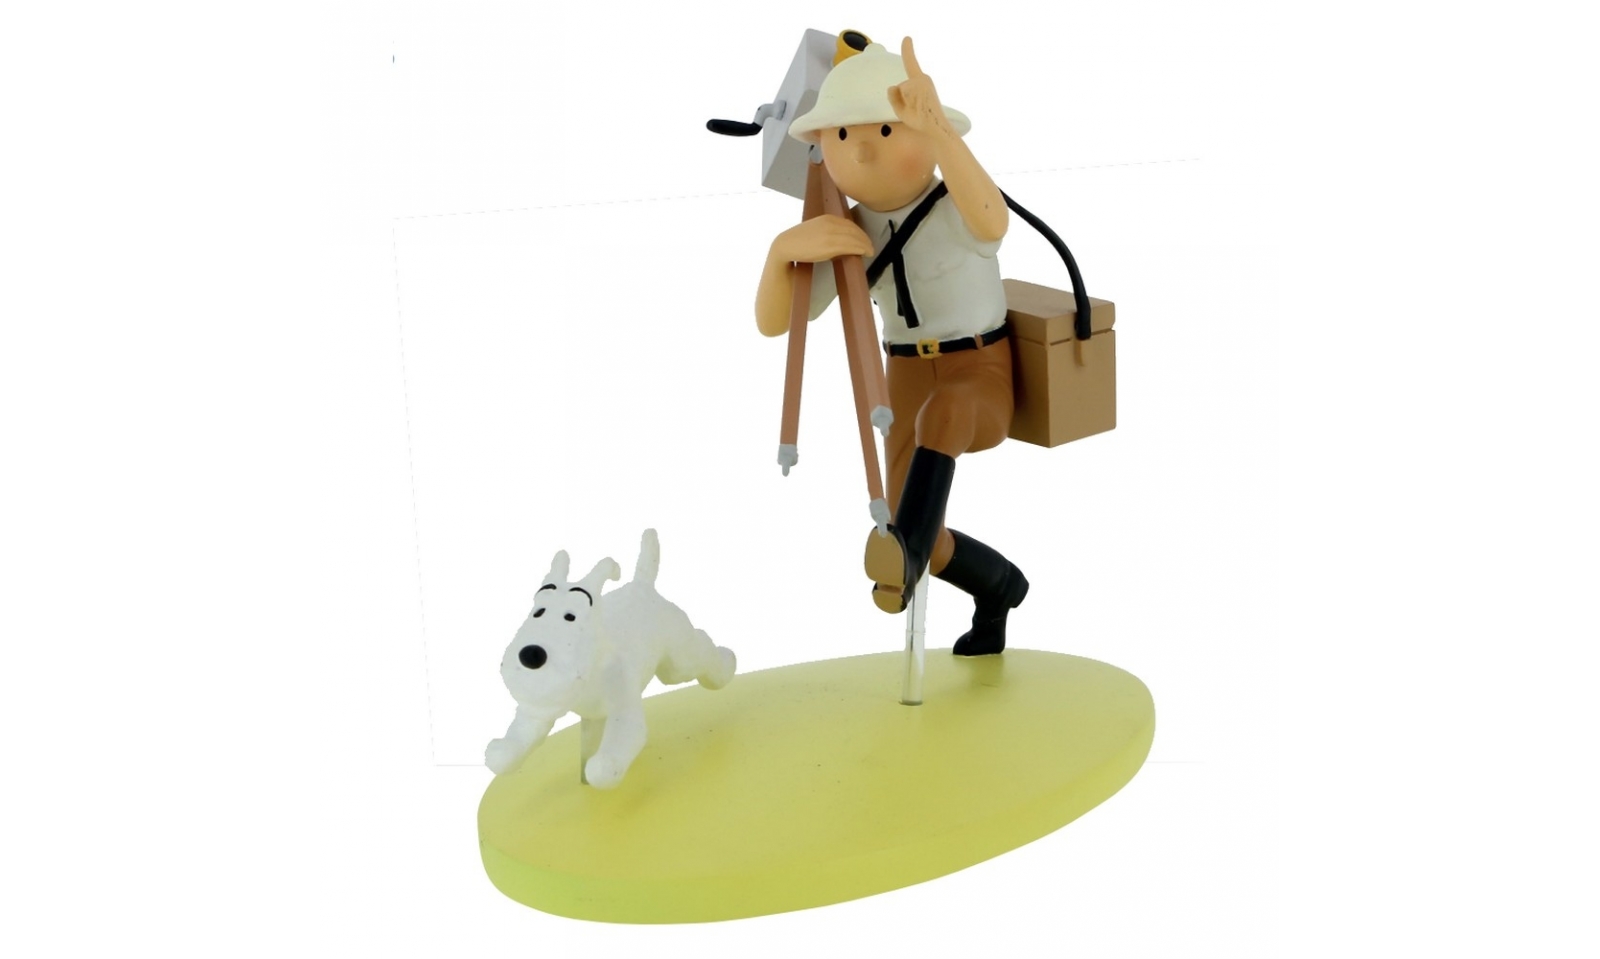 Figurine Tintin en Route Résine 19 cm 42217